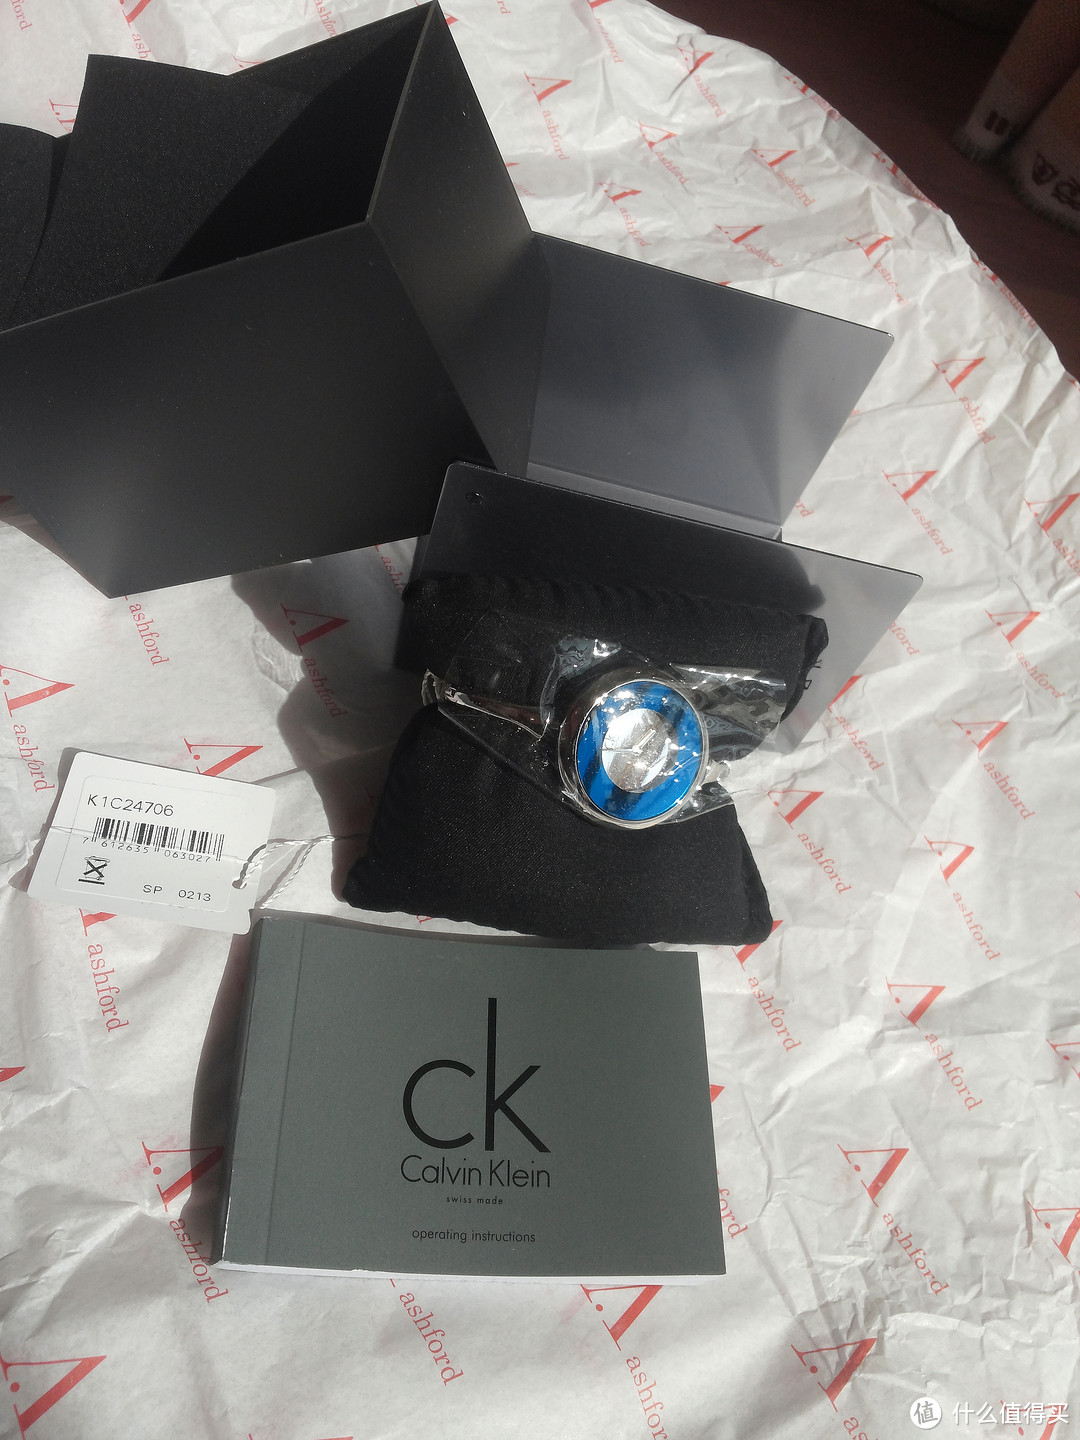 有史以来中的最大奖：Calvin Klein K1C24706 女士手镯形时尚腕表